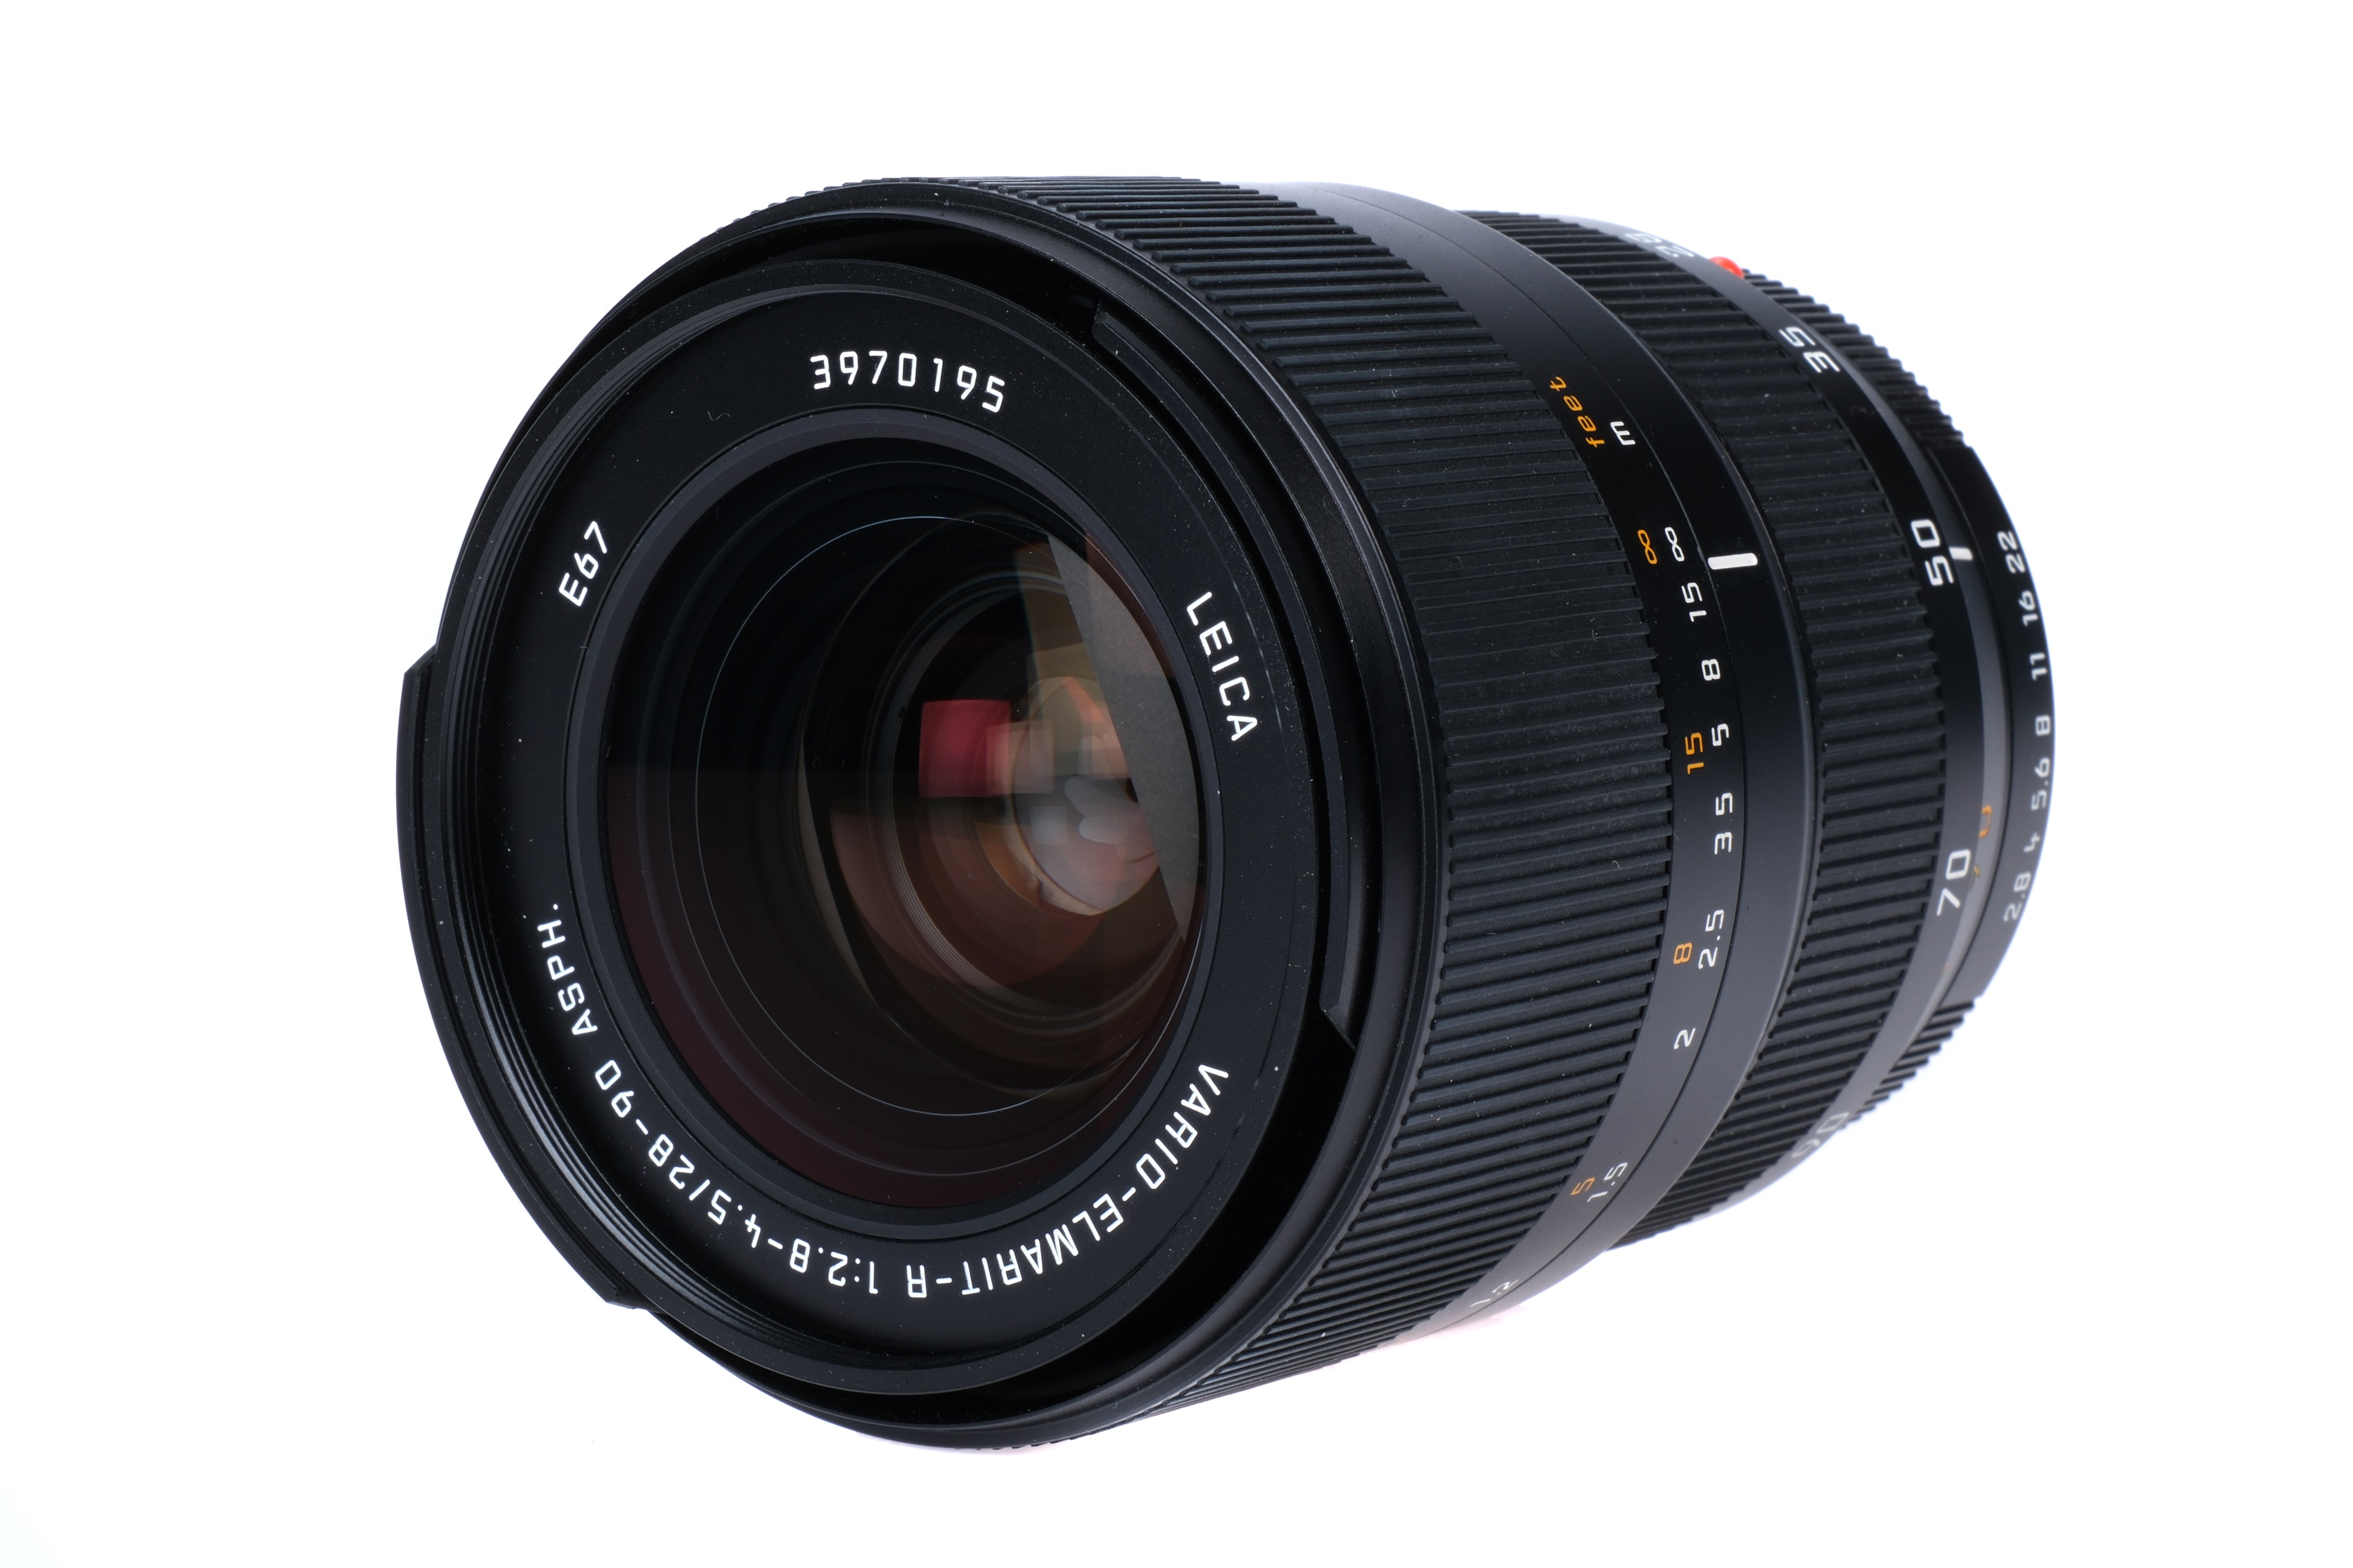 A Leitz Vario-Elmarit-R ASPH. f/2.8-4.5 28-90mm Lens, - Image 2 of 3